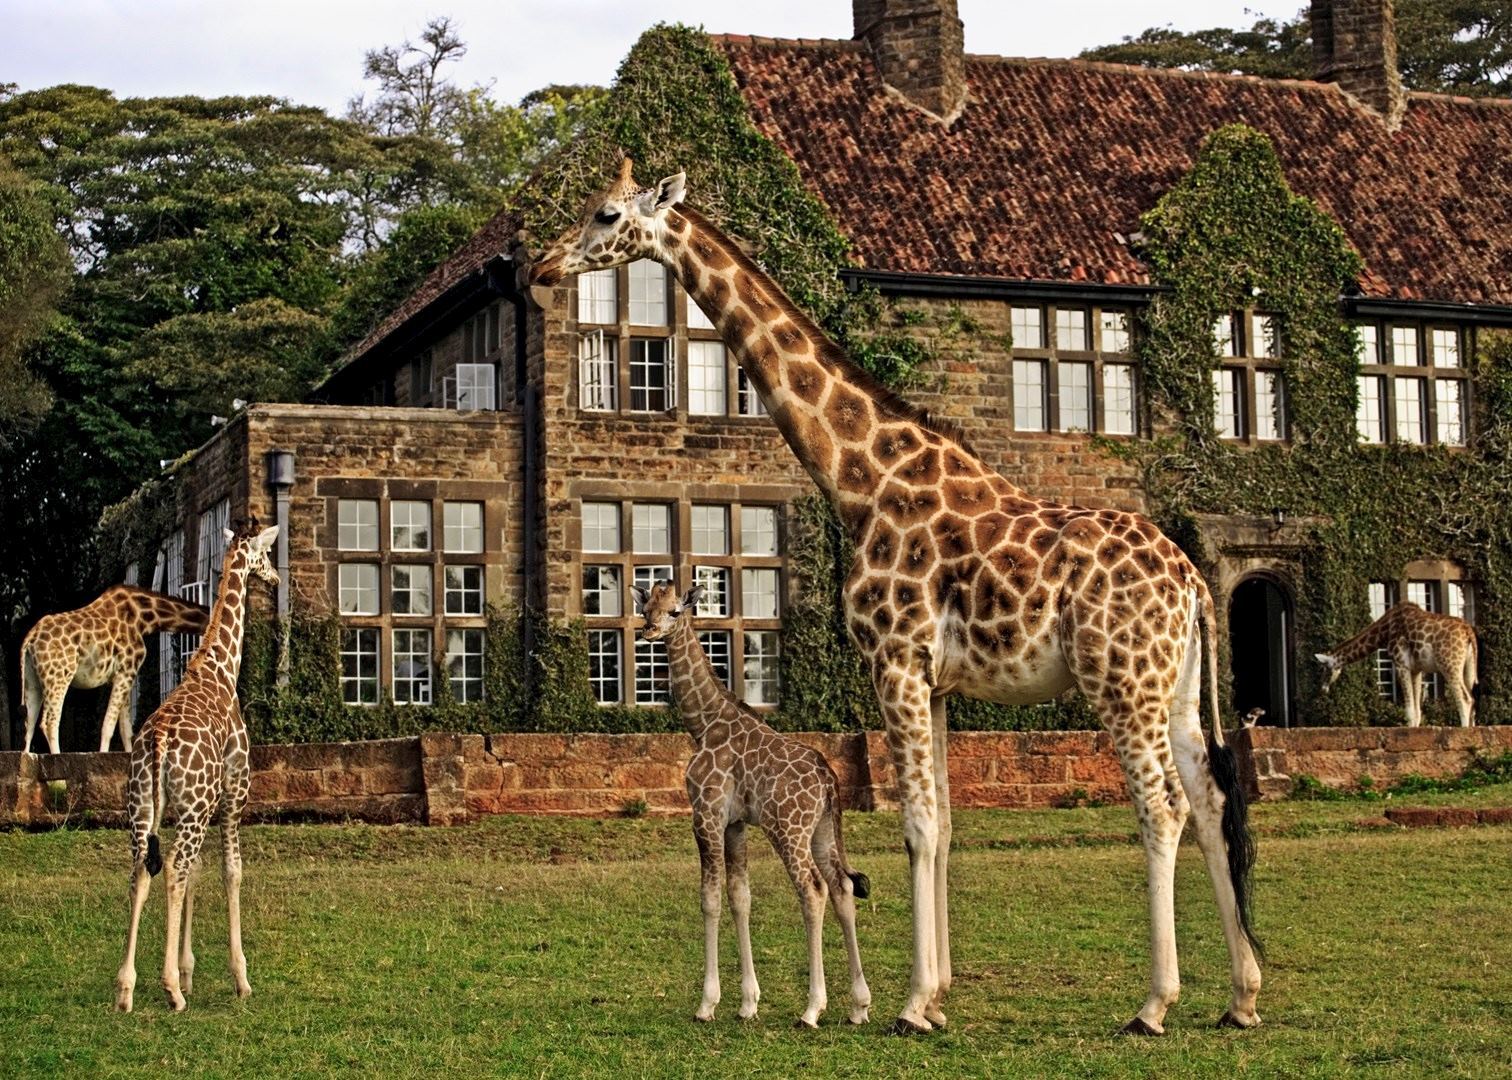 A group of giraffes outside the Giraffe Manor in Nairobi